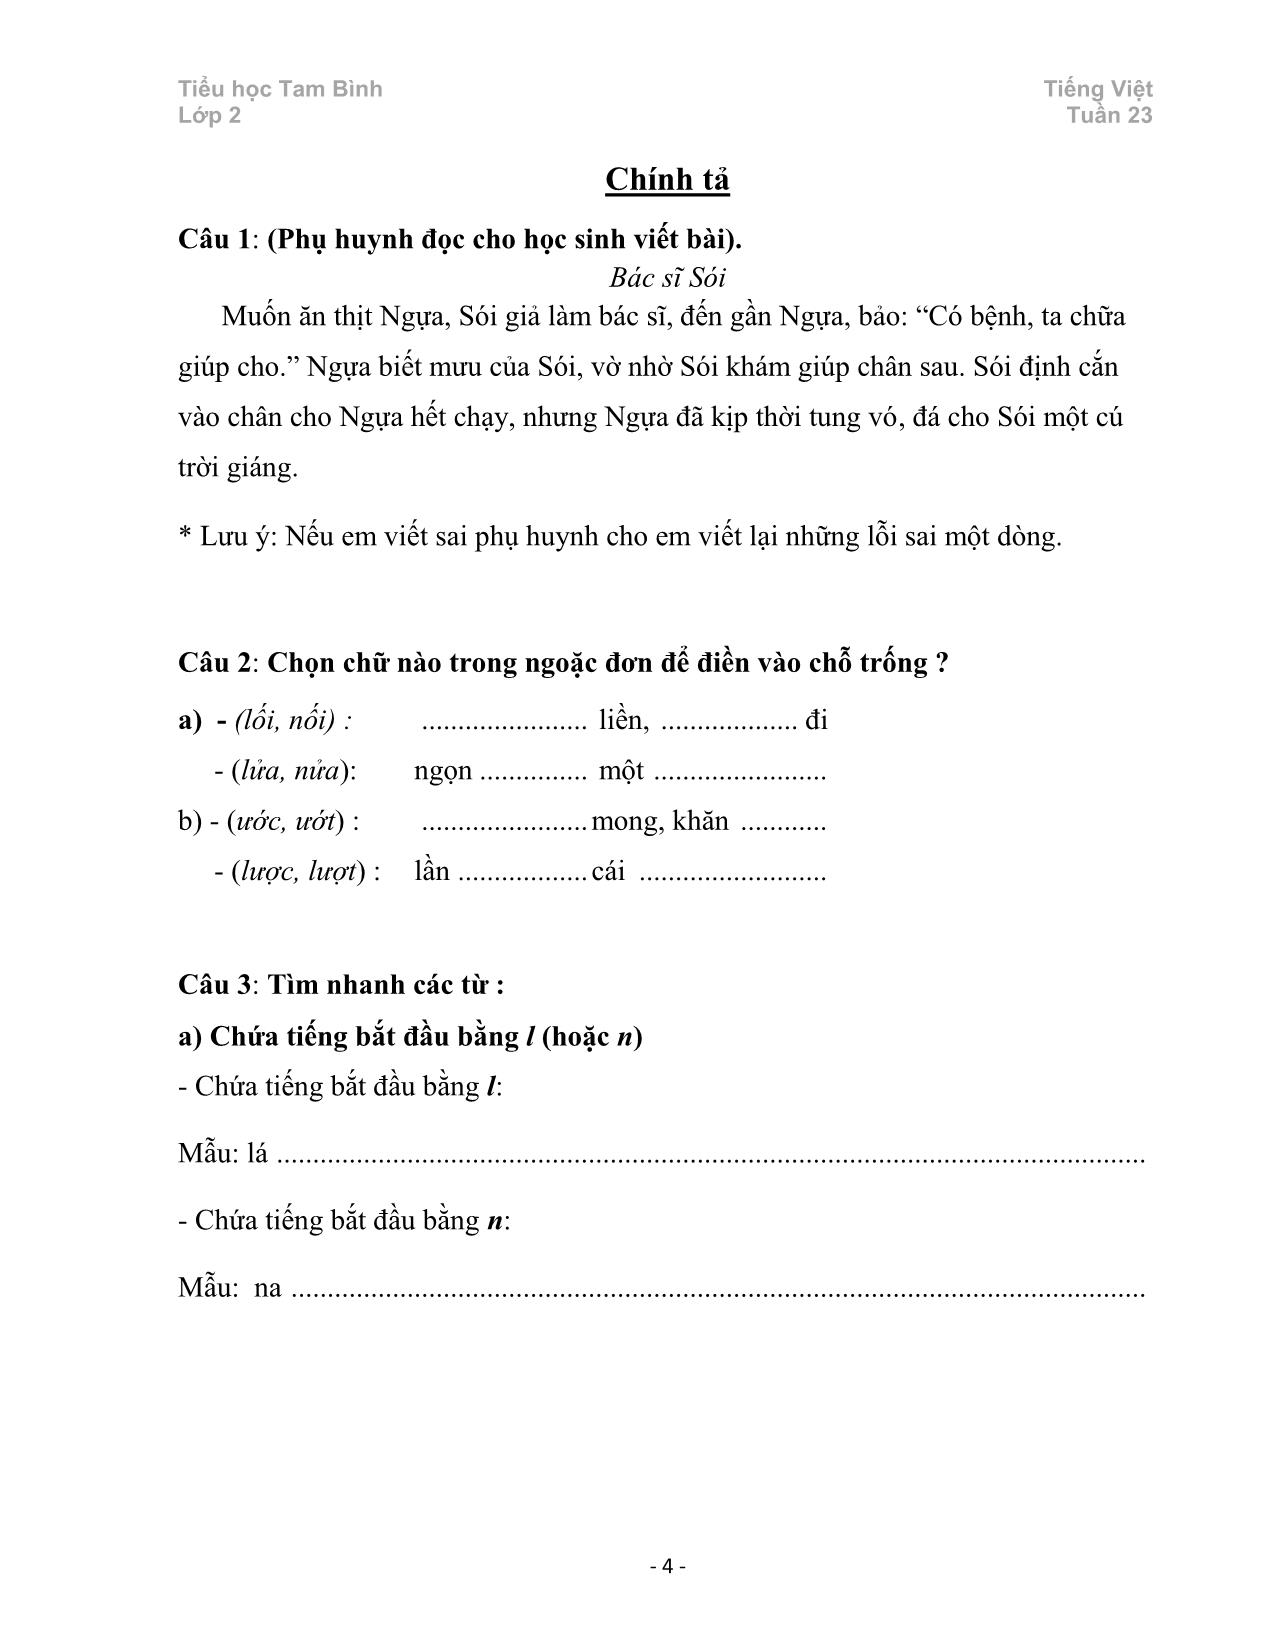 Đề cương ôn tập Tiếng Việt 2 - Tuần 23 trang 4